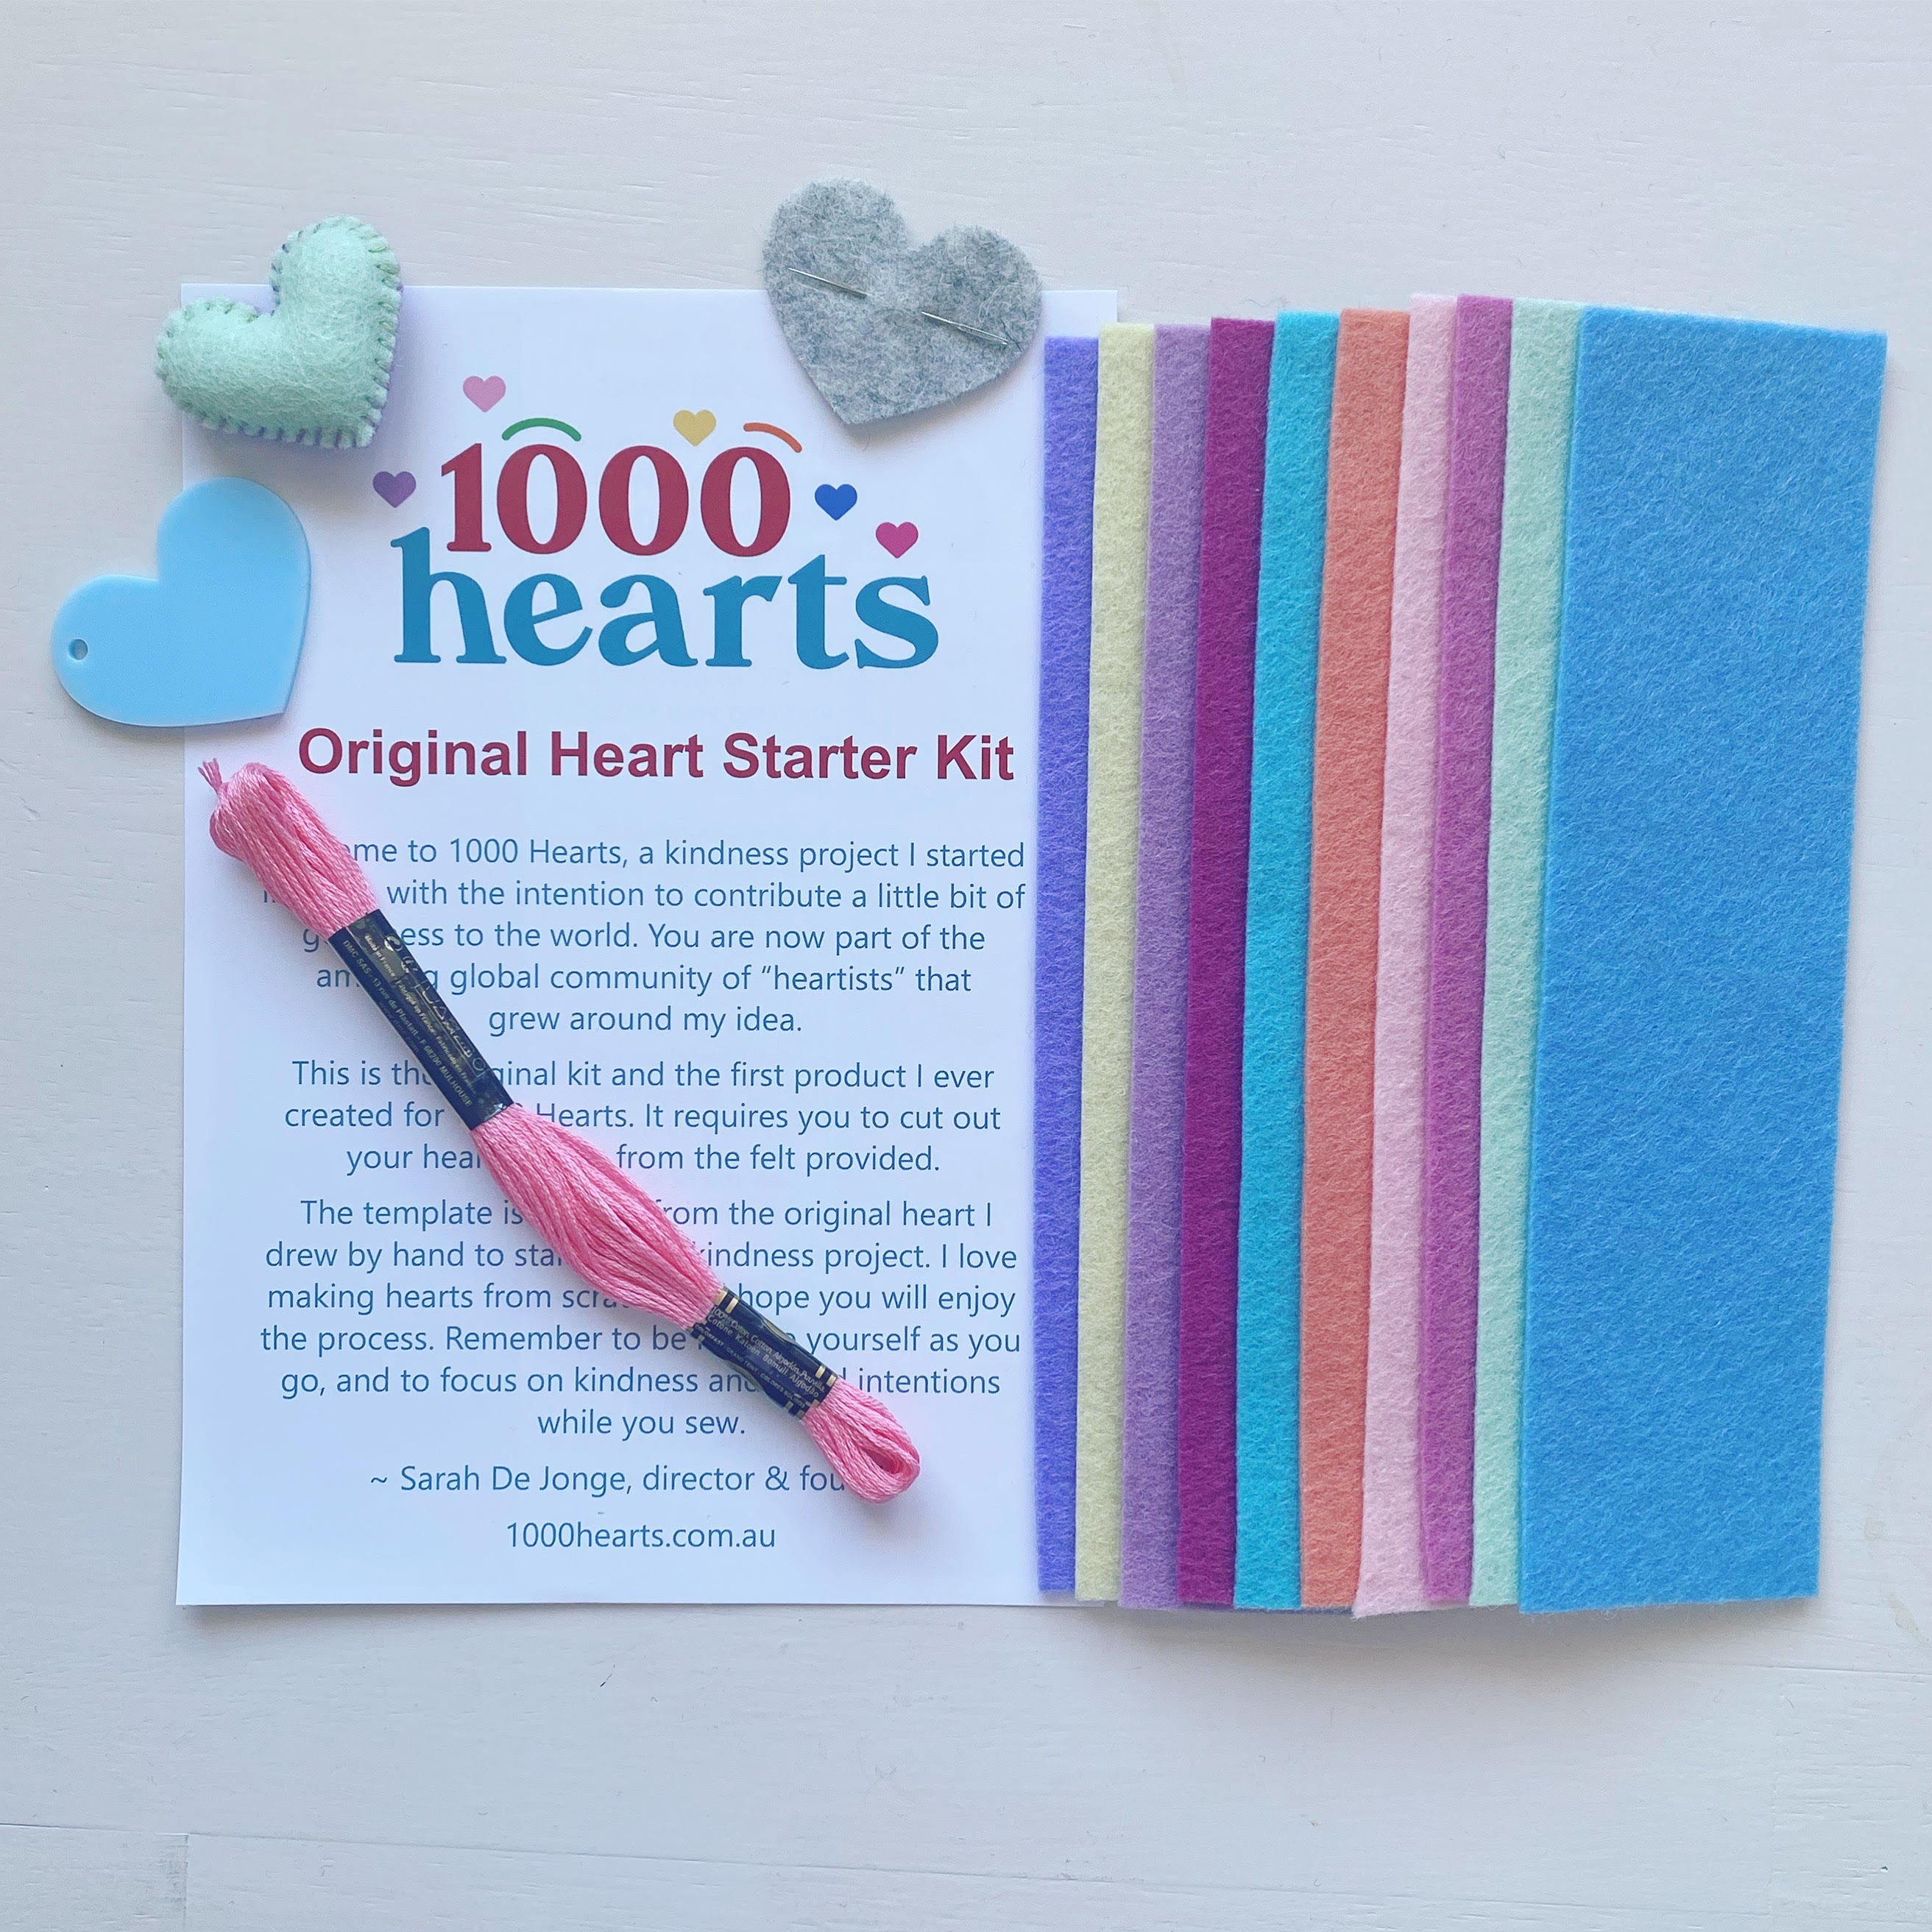 Original Heart Starter Kit with felt